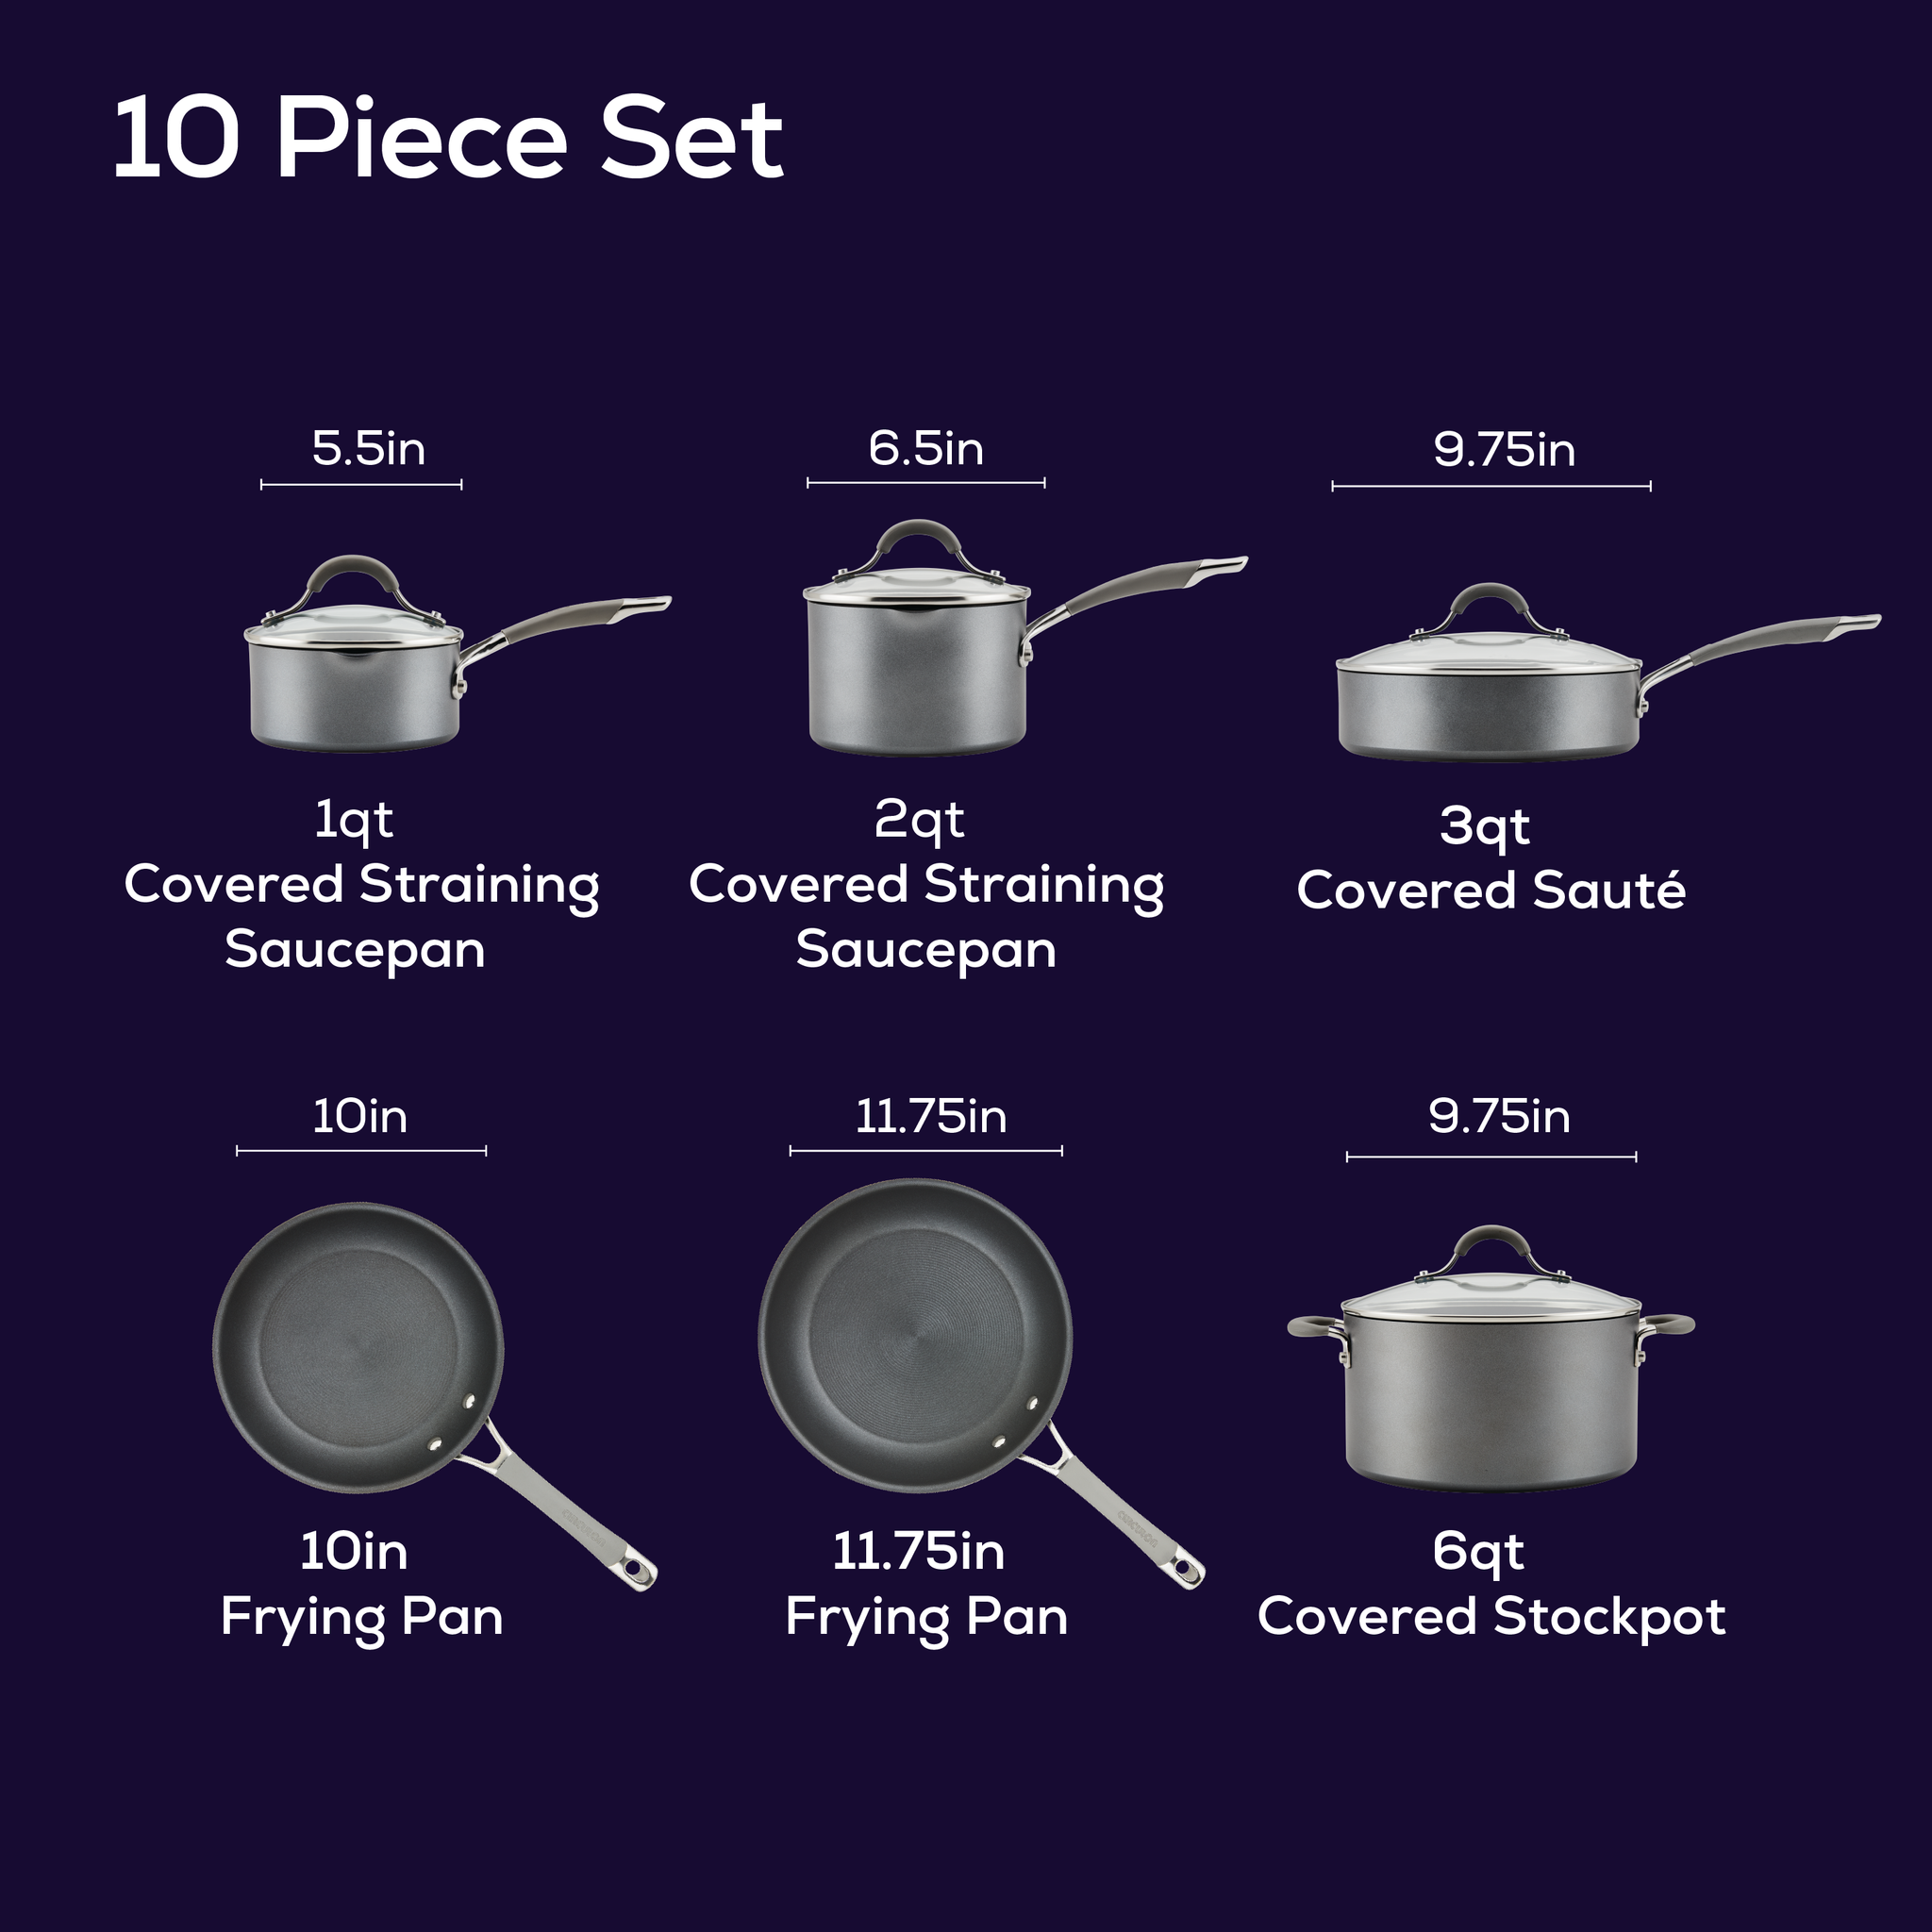 Circulon 10-Piece Total Nonstick Bakeware Set